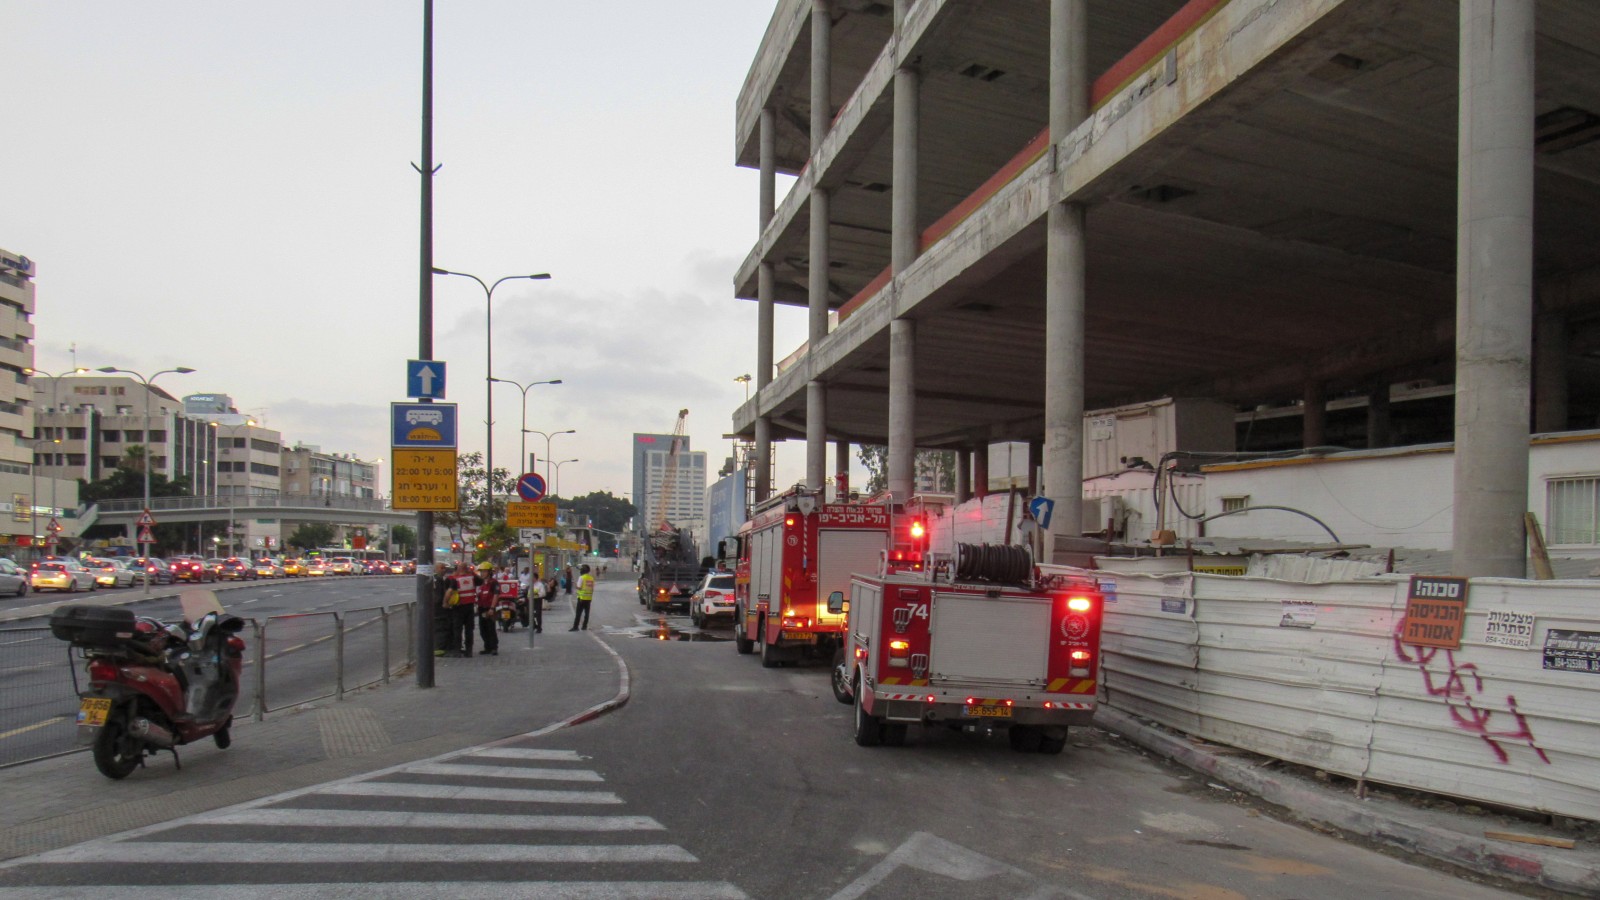 אתר התאונה בבניין על דרך בגין בתל-אביב. צילום: דבר ראשון.